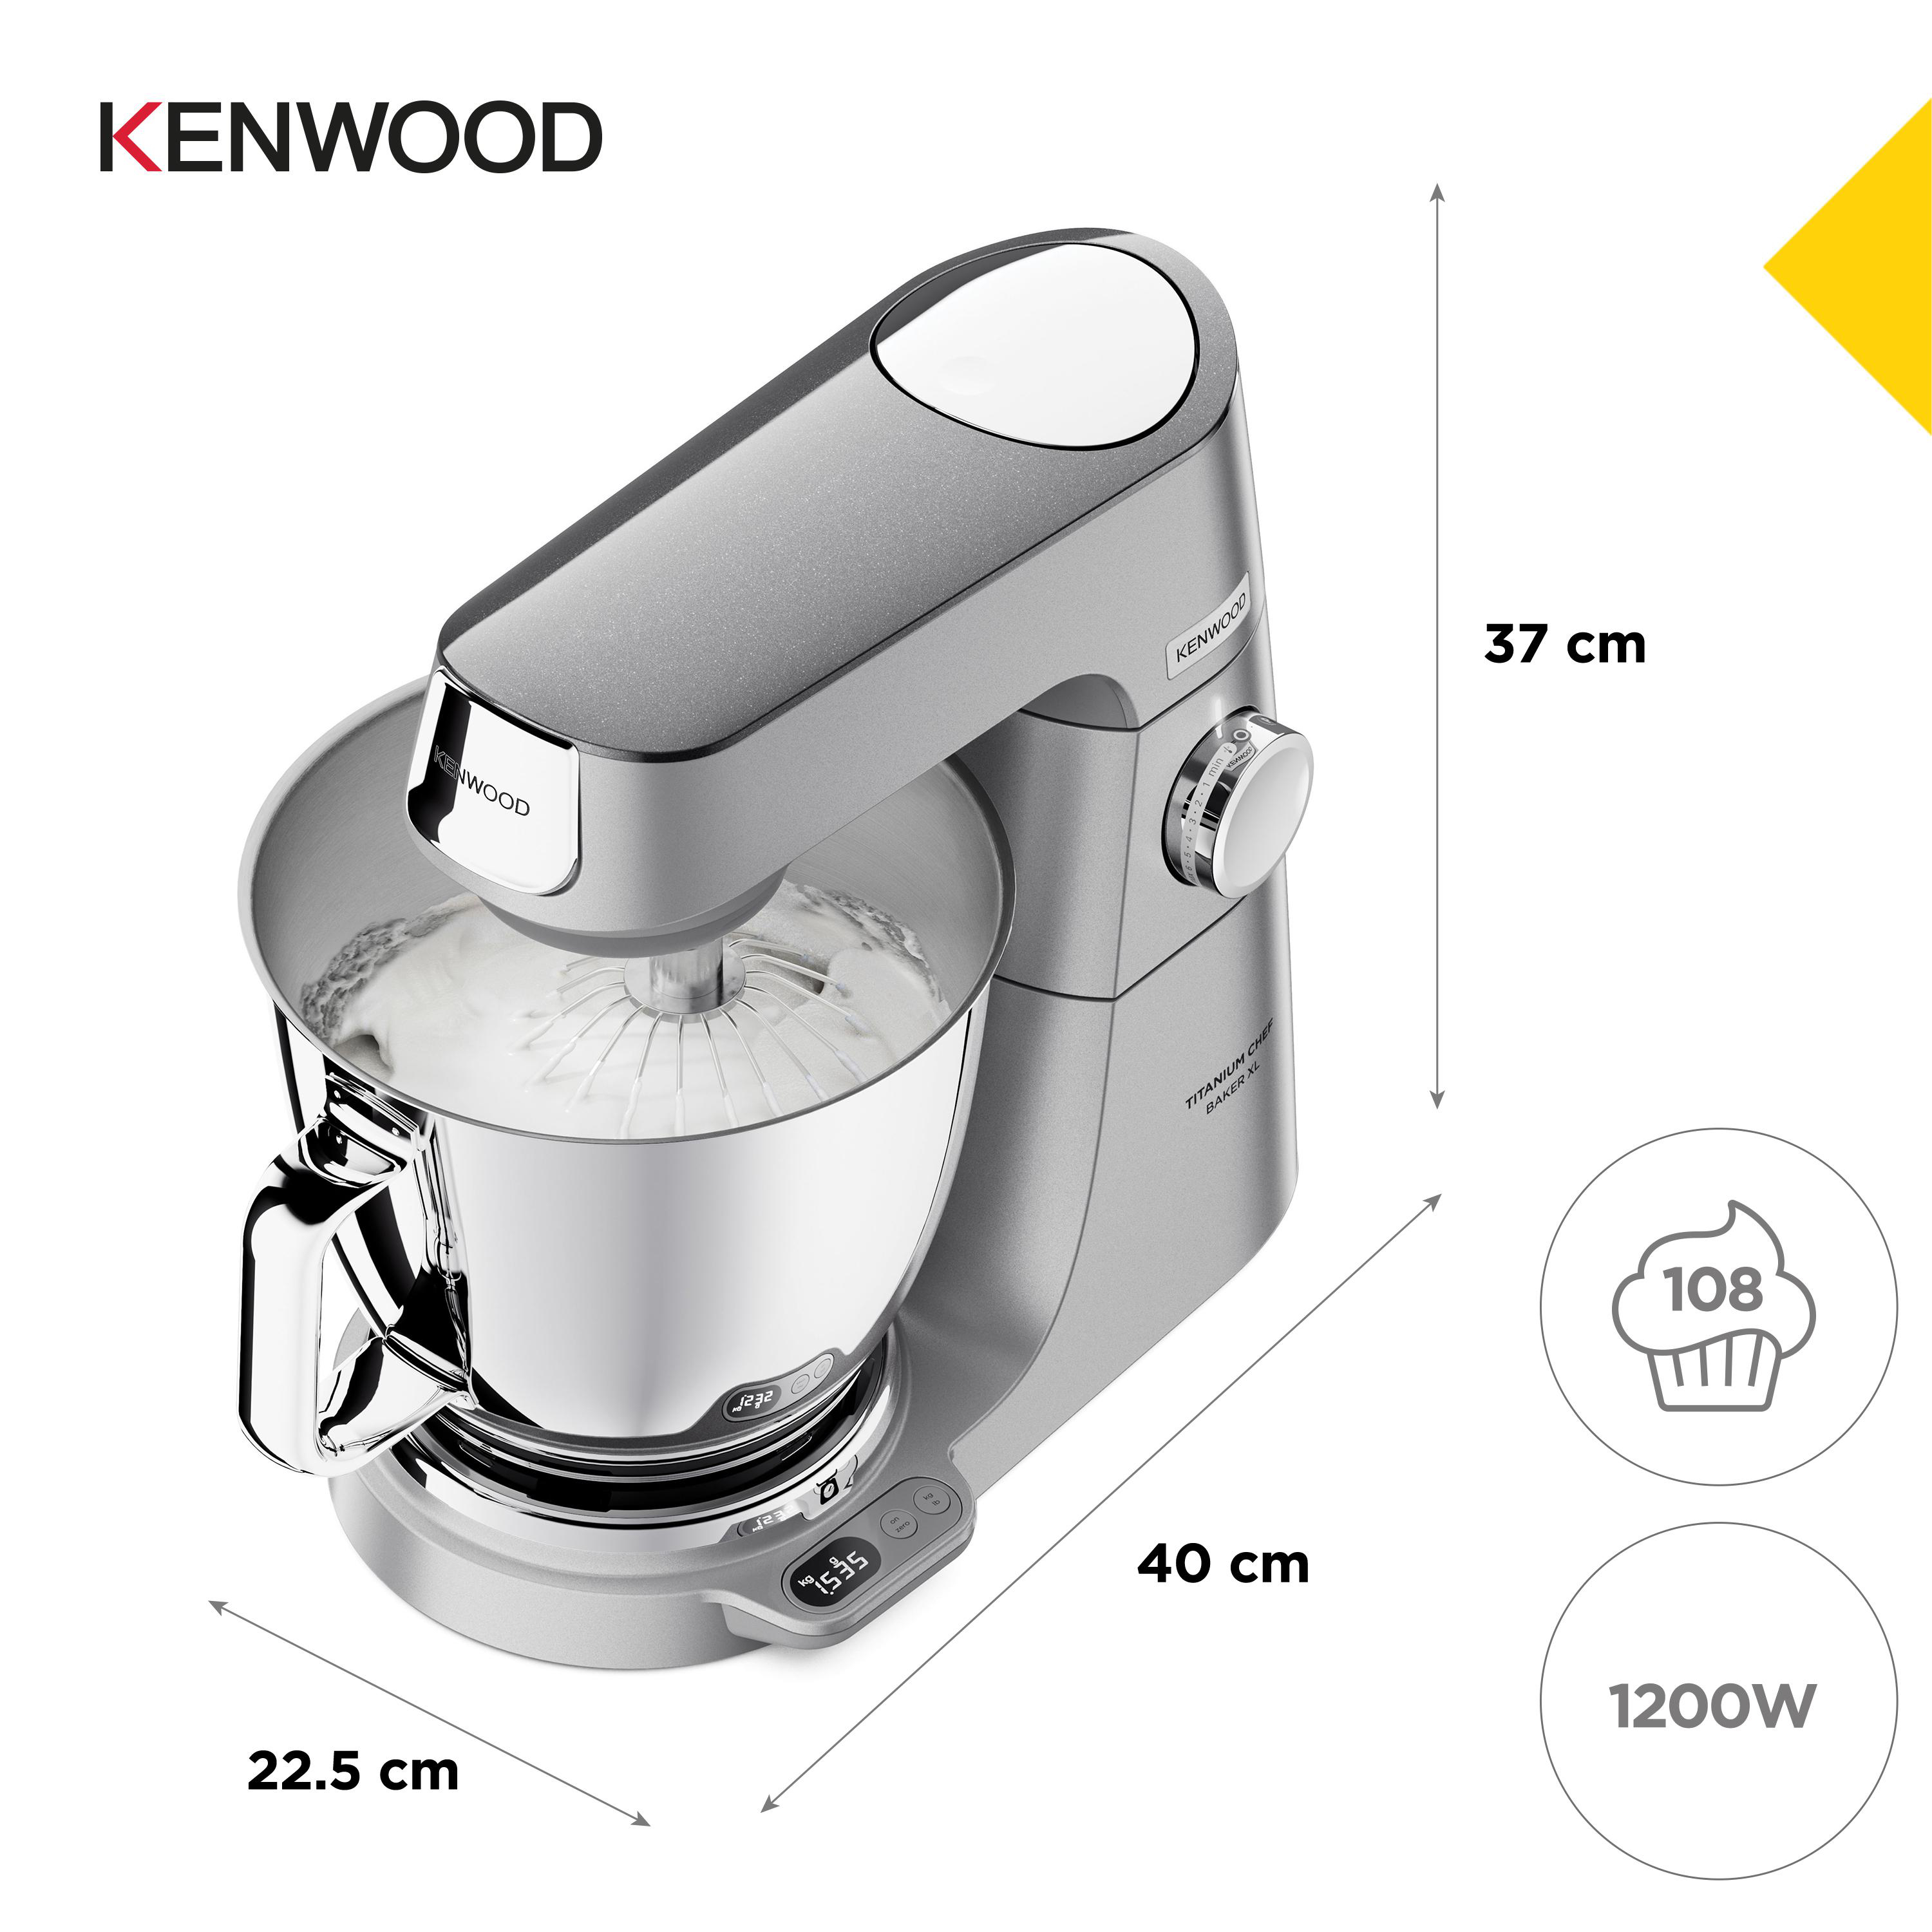 KENWOOD Titanium Chef Baker XL 7 Watt) (Rührschüsselkapazität: KVL85.004SI Küchenmaschine l, Silber 1200